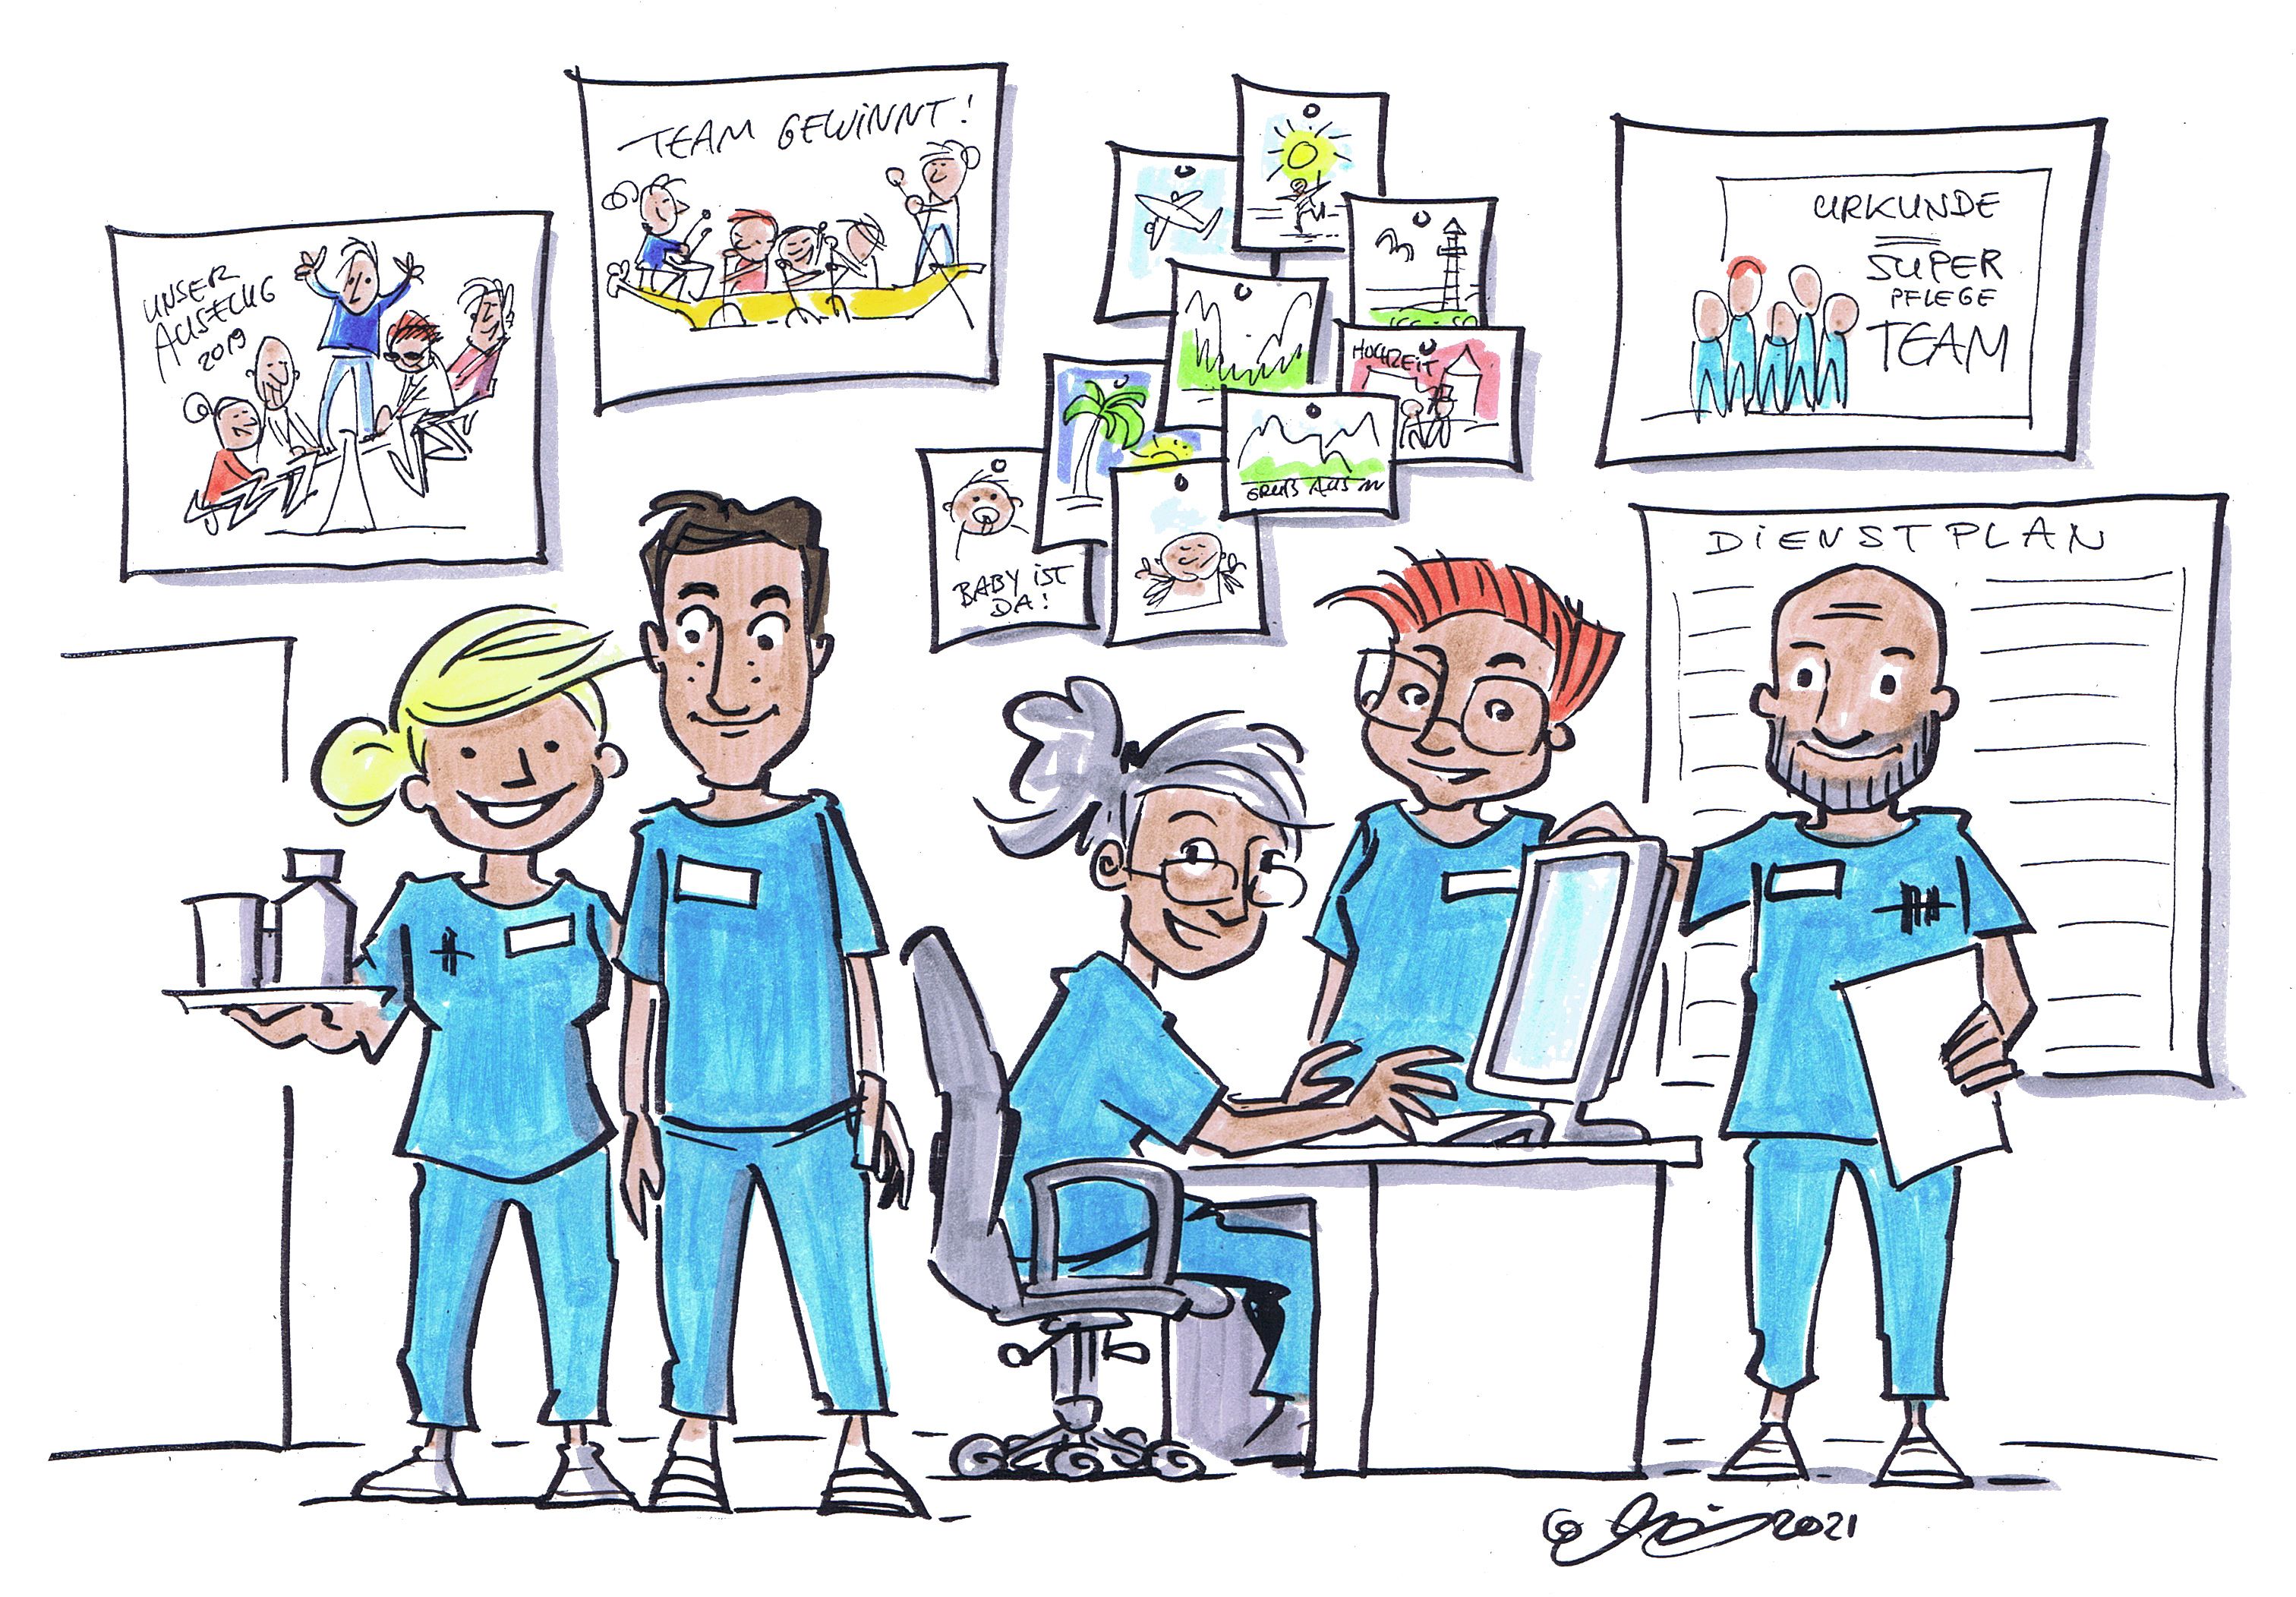 Karikatur: Ein fünfköpfiges Team von Pflegekräften steht in einem Büro. An der Wand erkennt man Zeichnungen von gemeinsamen Ausflügen, Postkarten, einen Dienstplan und eine Teamkurkunde. Alle Teammitglieder wirken zufrieden.